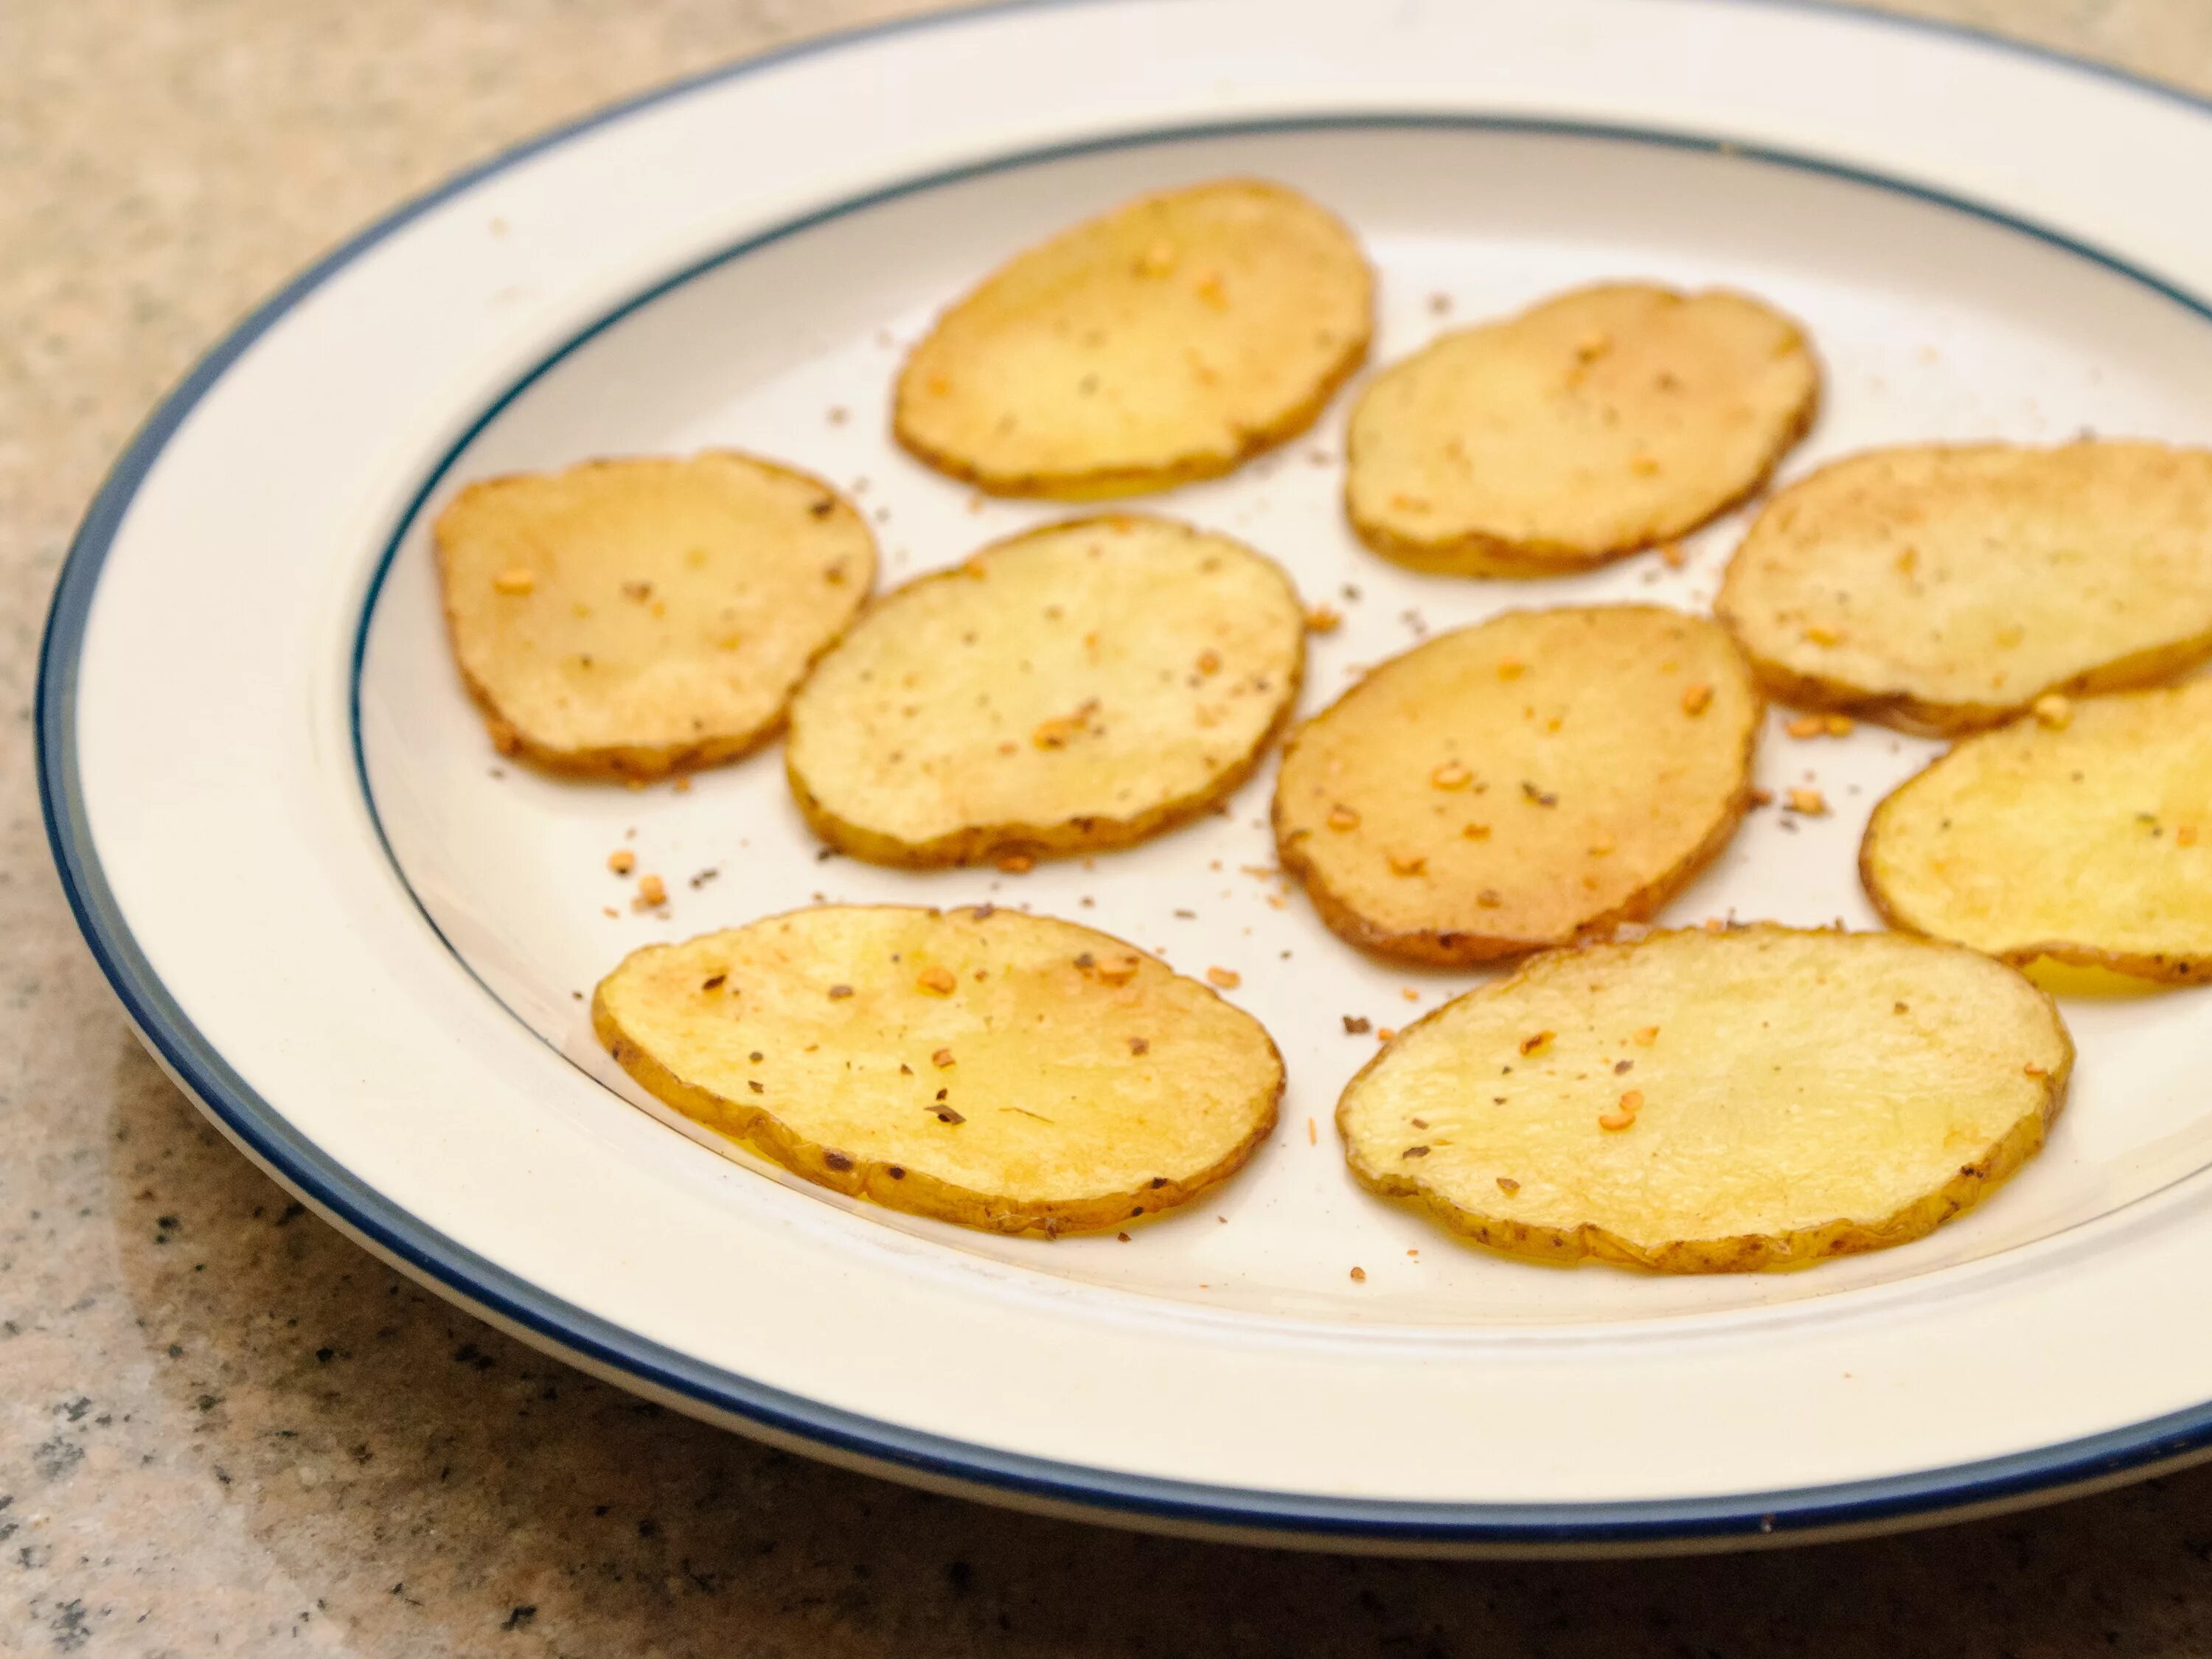 Чипсы дома из картошки. Приготовление чипсов из картофеля. Чипсы из картошки в домашних условиях. Картошка в масле чипсы. Картофельные чипсы в домашних условиях в духовке